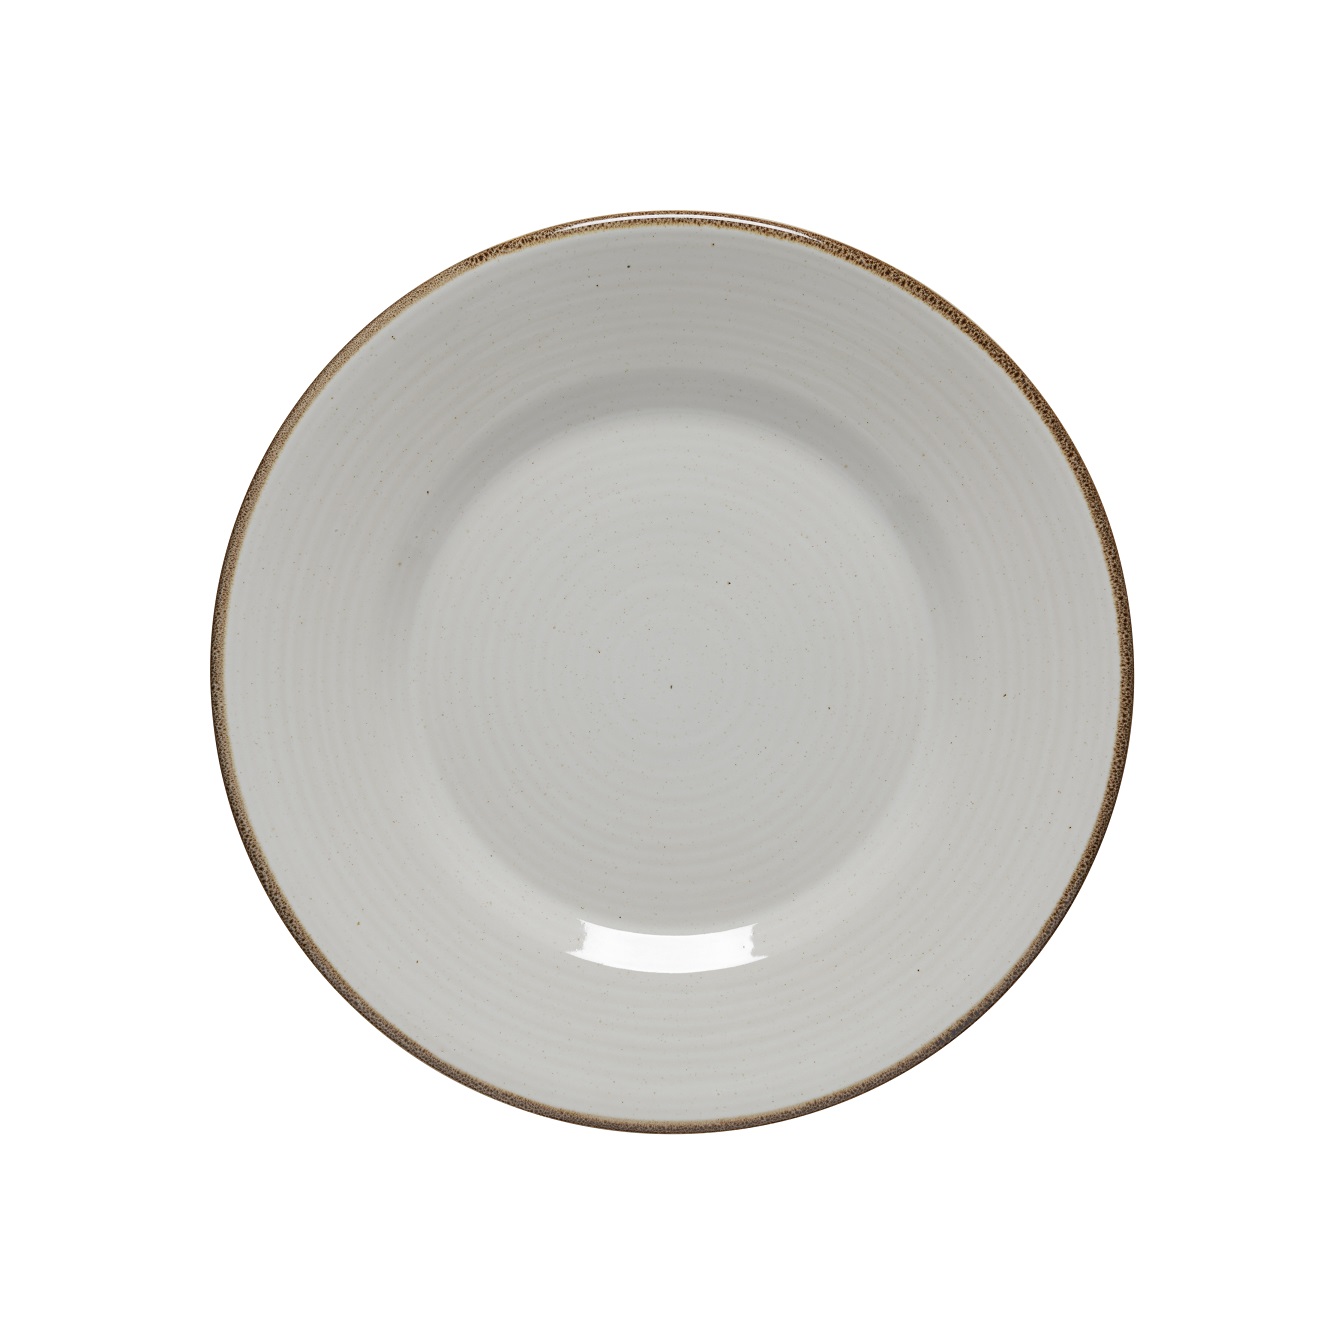 Sardegna Dove Grey Dinner Plate 28cm Gift